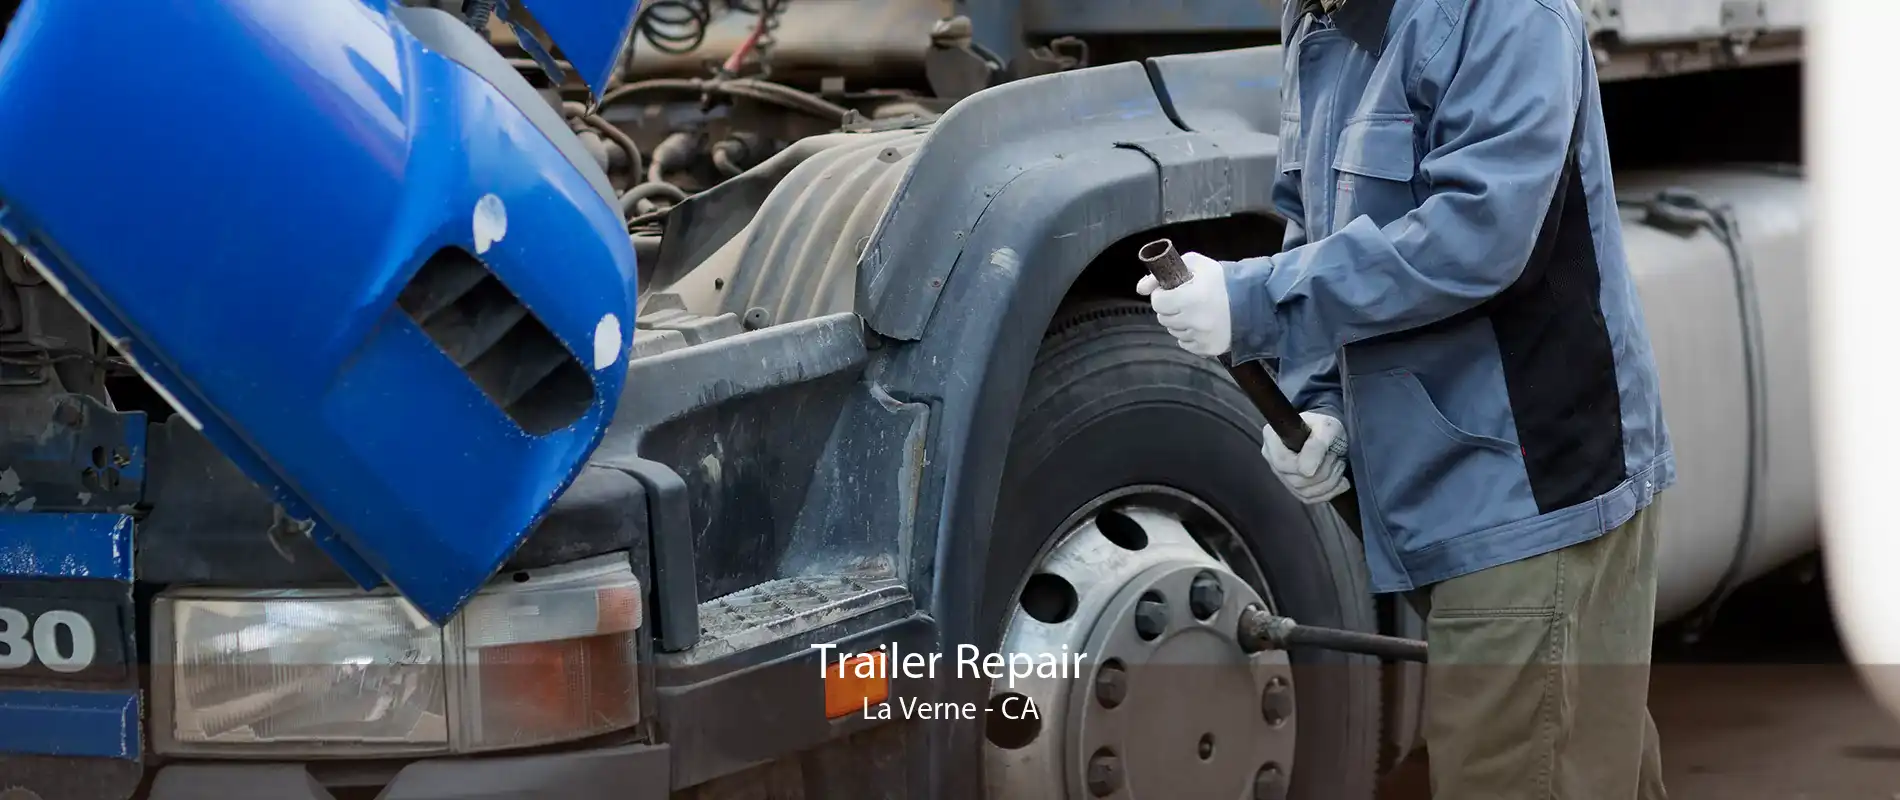 Trailer Repair La Verne - CA